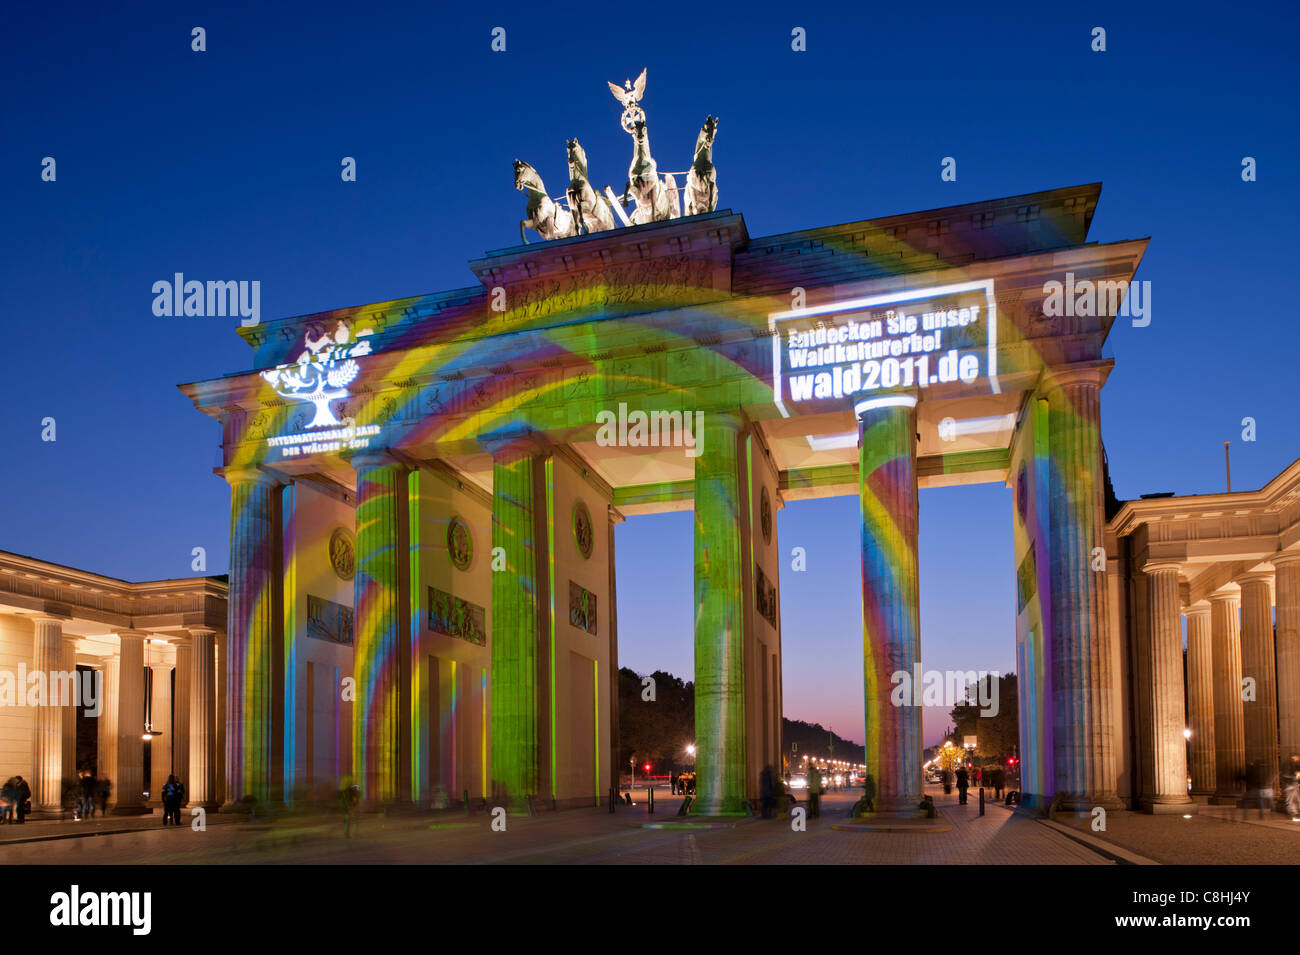 Porte de Brandebourg allumé pendant la fête des lumières à Berlin Allemagne 2011 Banque D'Images